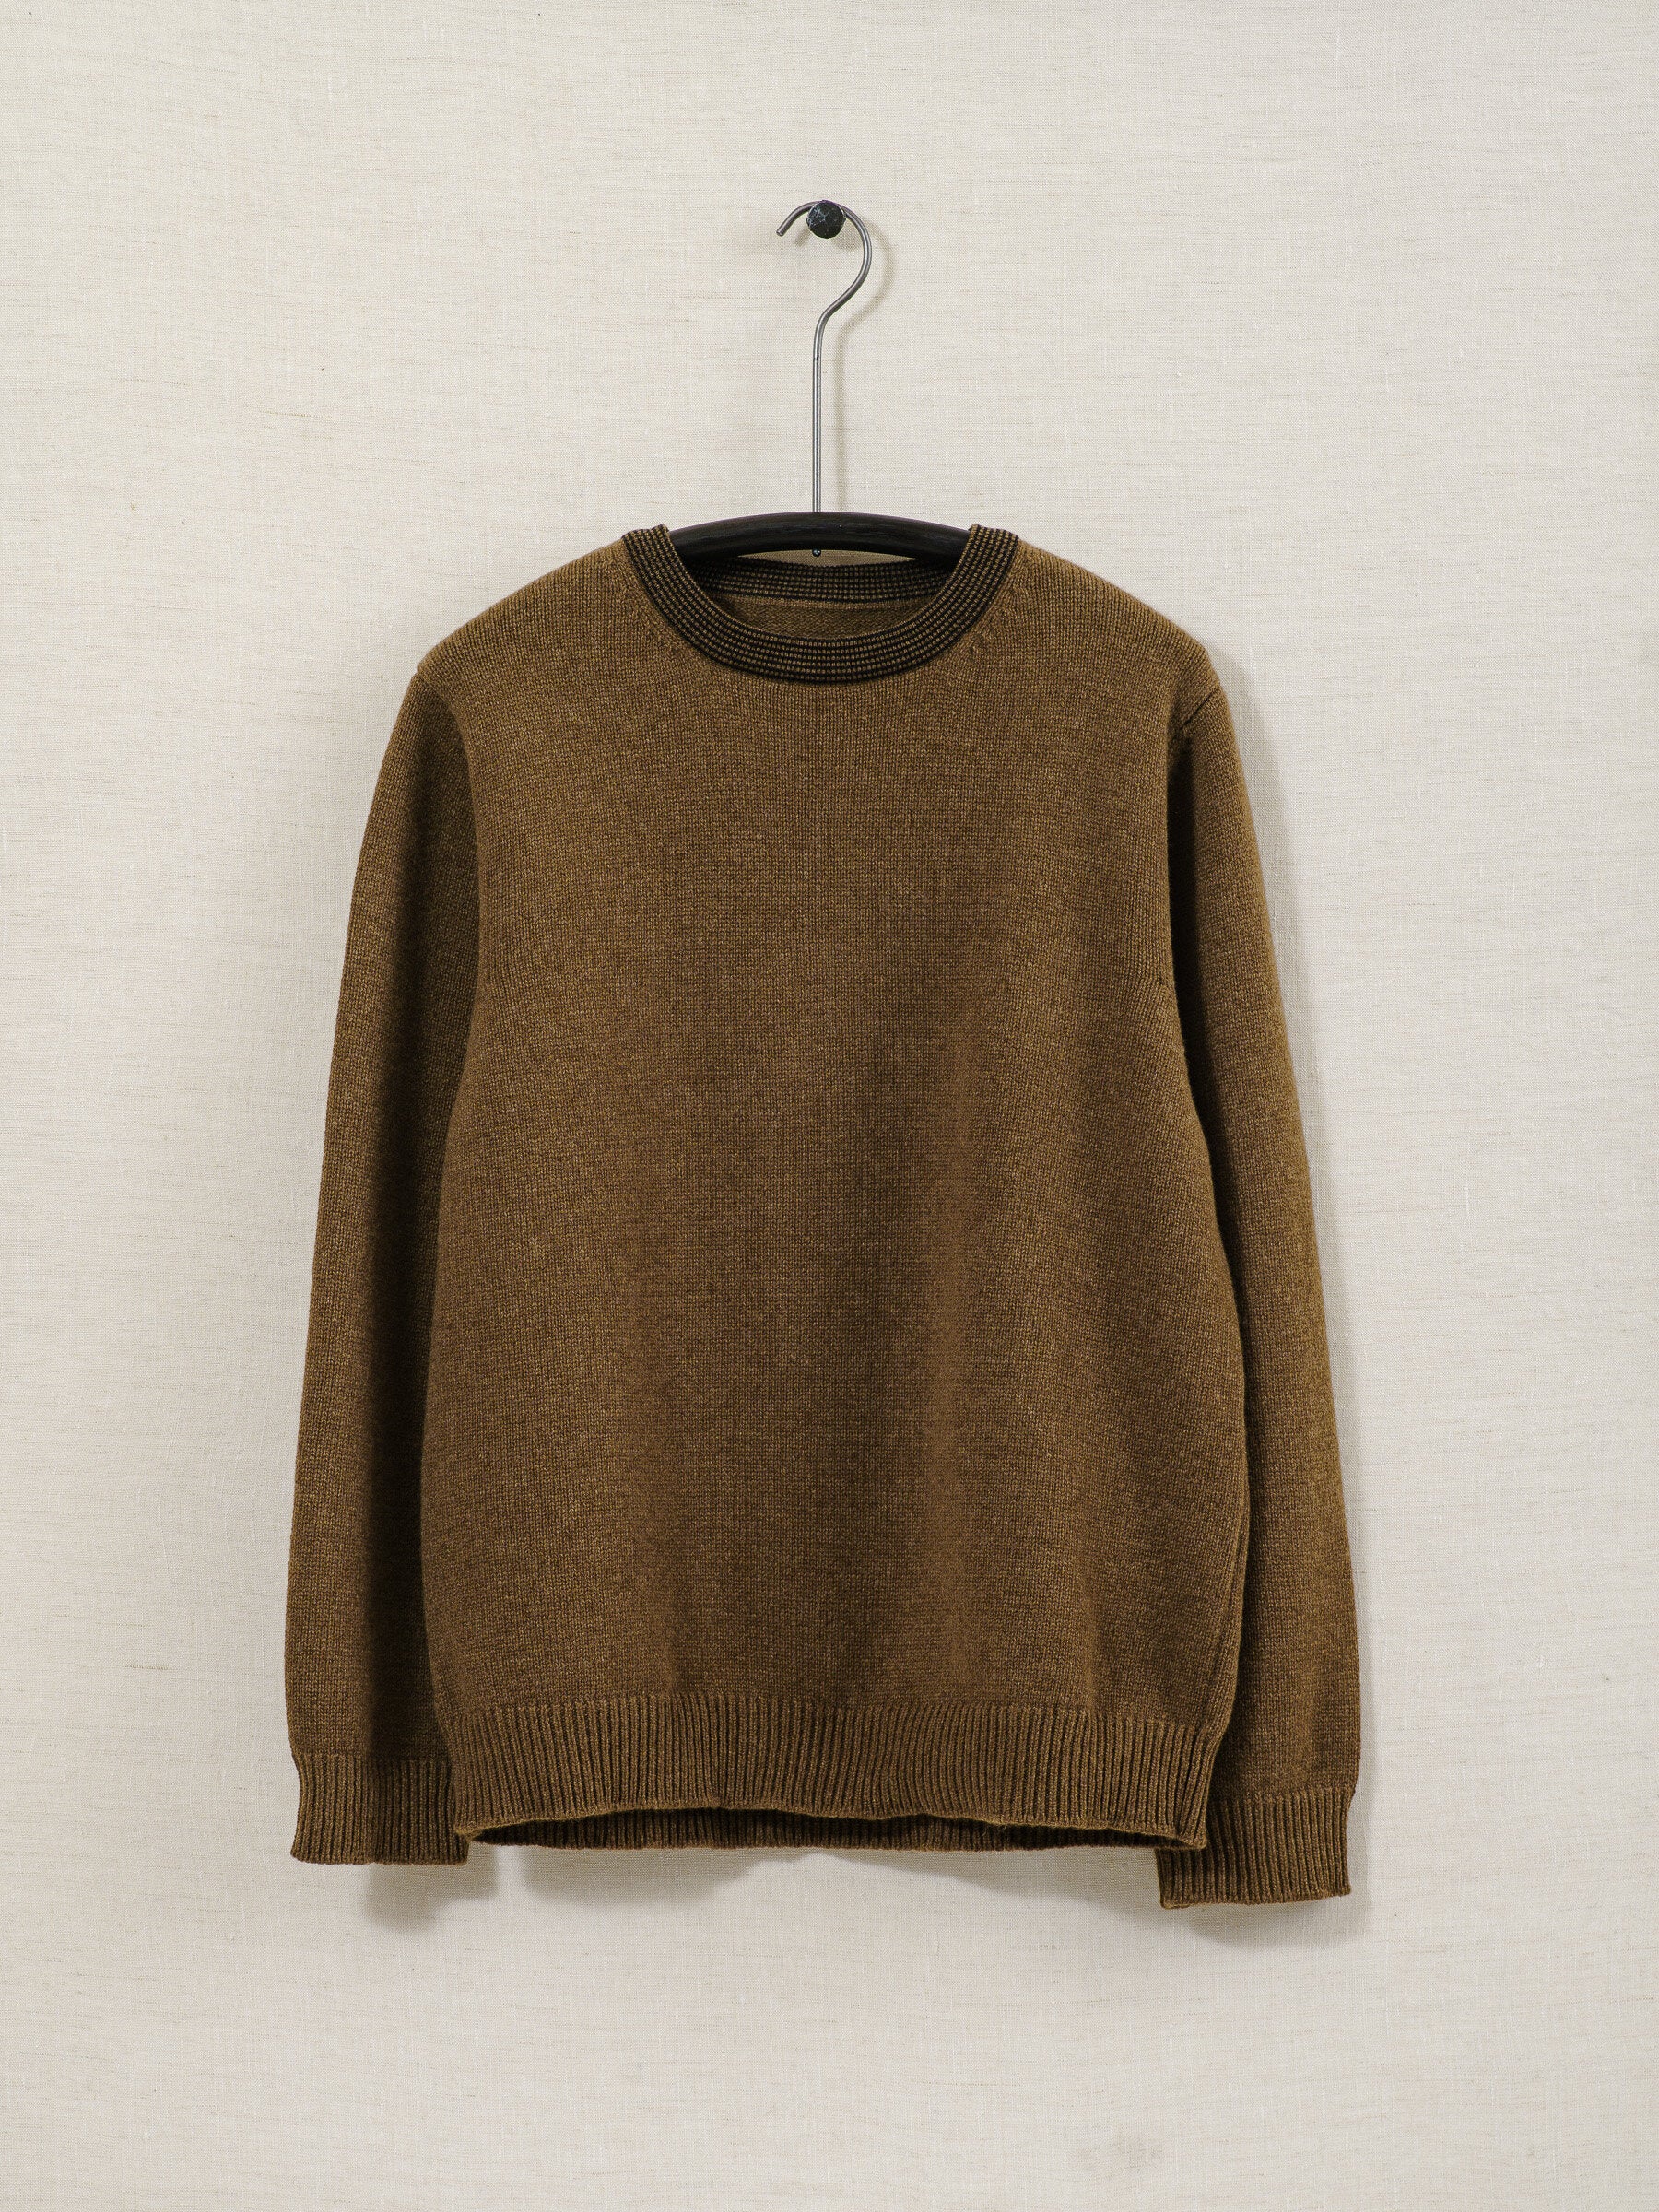 Stripe Collar Sweater - Lambswool/Cashmere – evan kinori